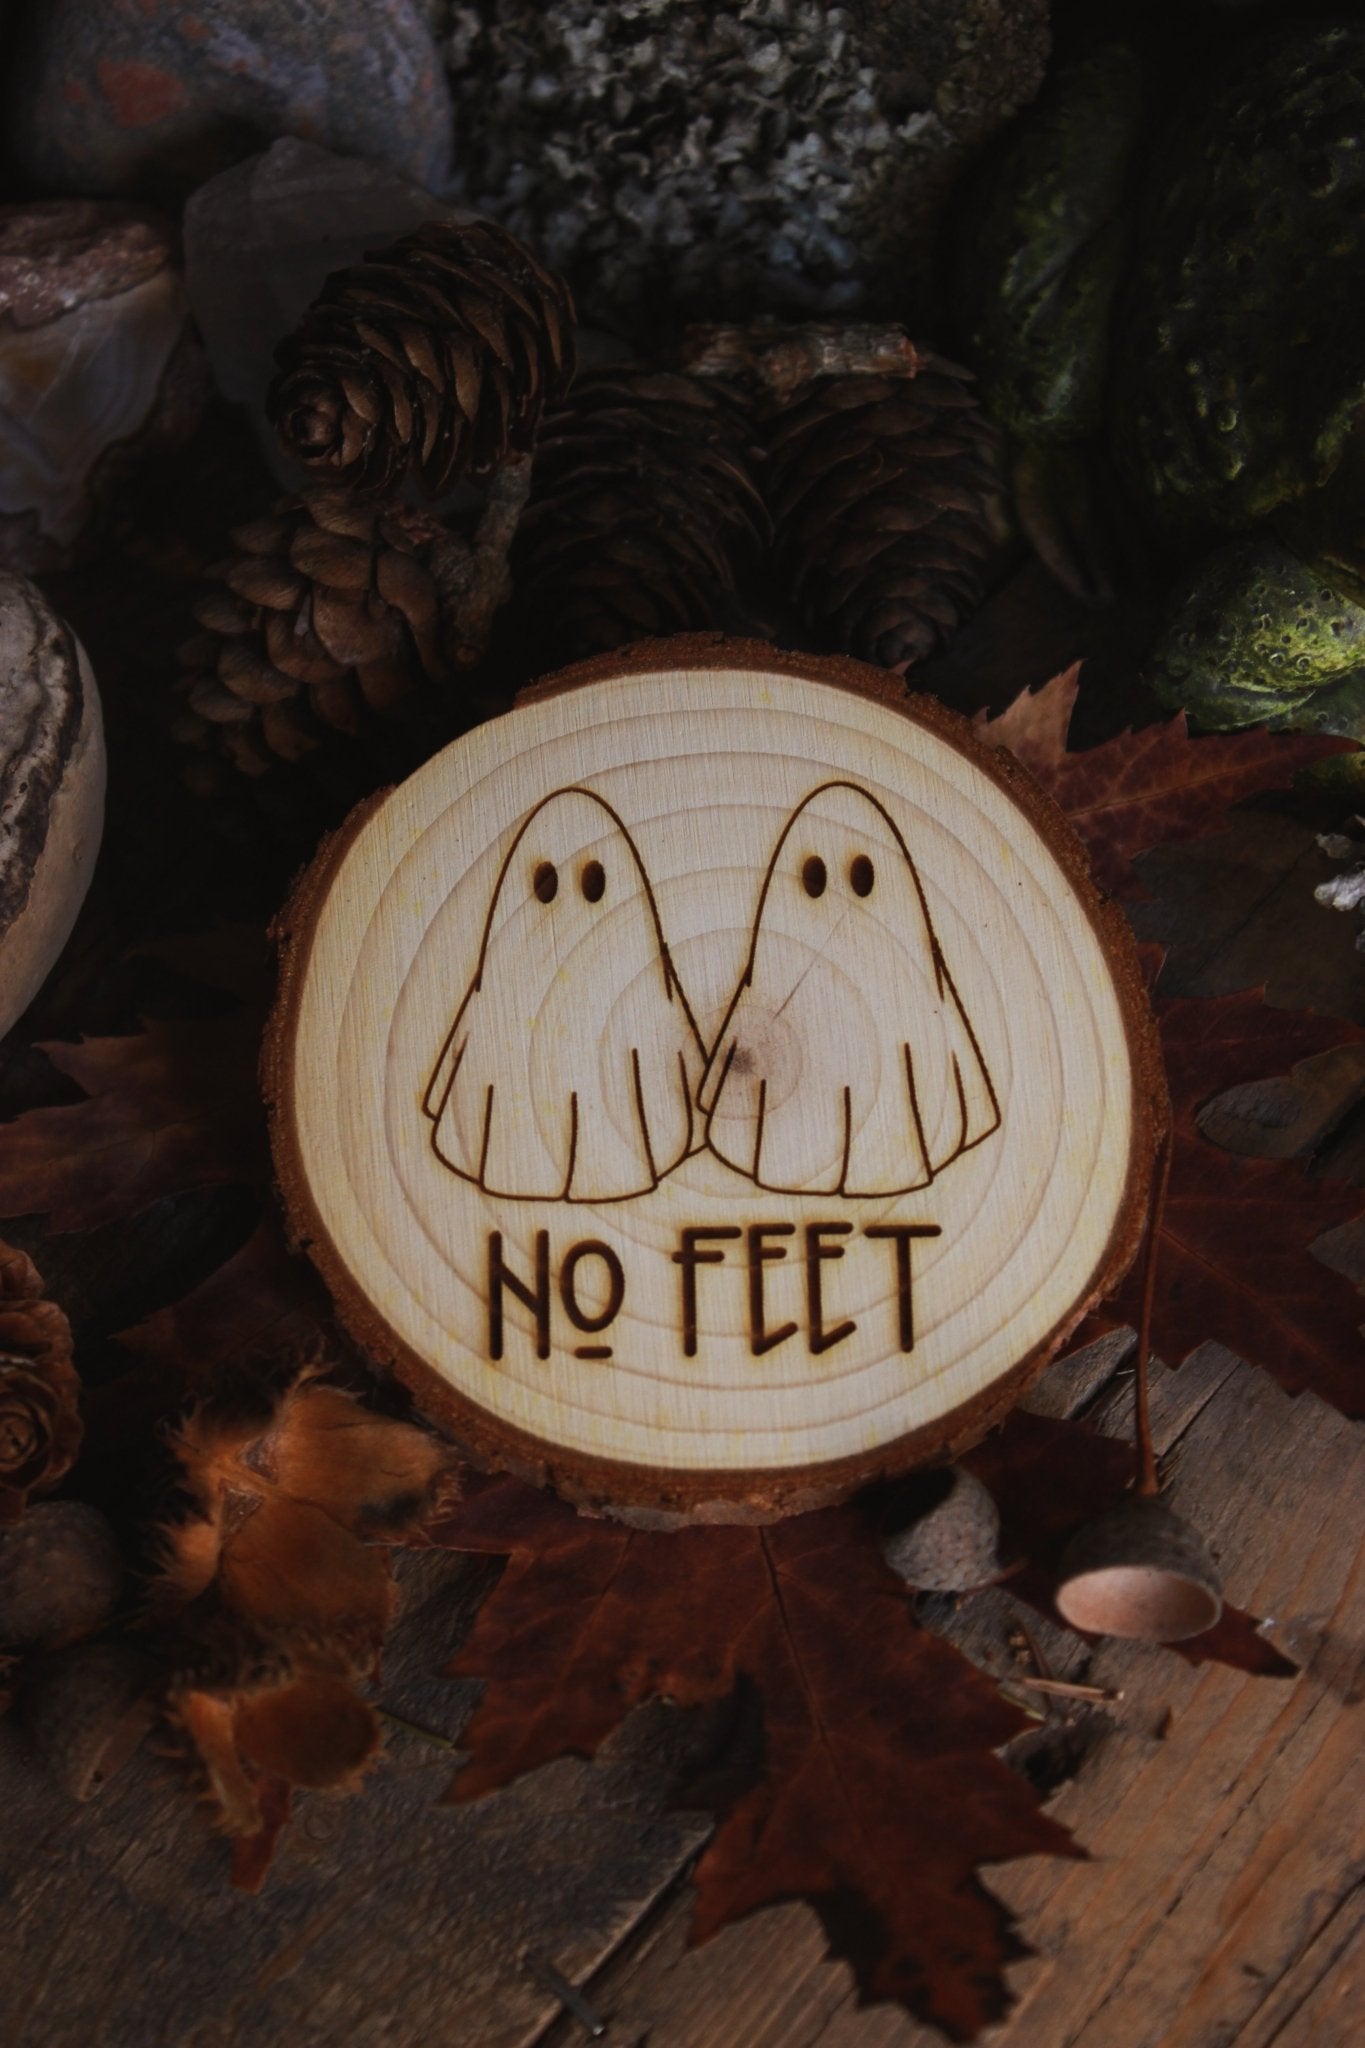  Wandbild aus Holz "No Feet" - Handgefertigtes Holzstück mit einer eingravierten Illustration von zwei Geistern und dem Text ‘NO FEET’, umgeben von natürlichen Elementen wie Tannenzapfen, Steinen und einer Froschstatue.